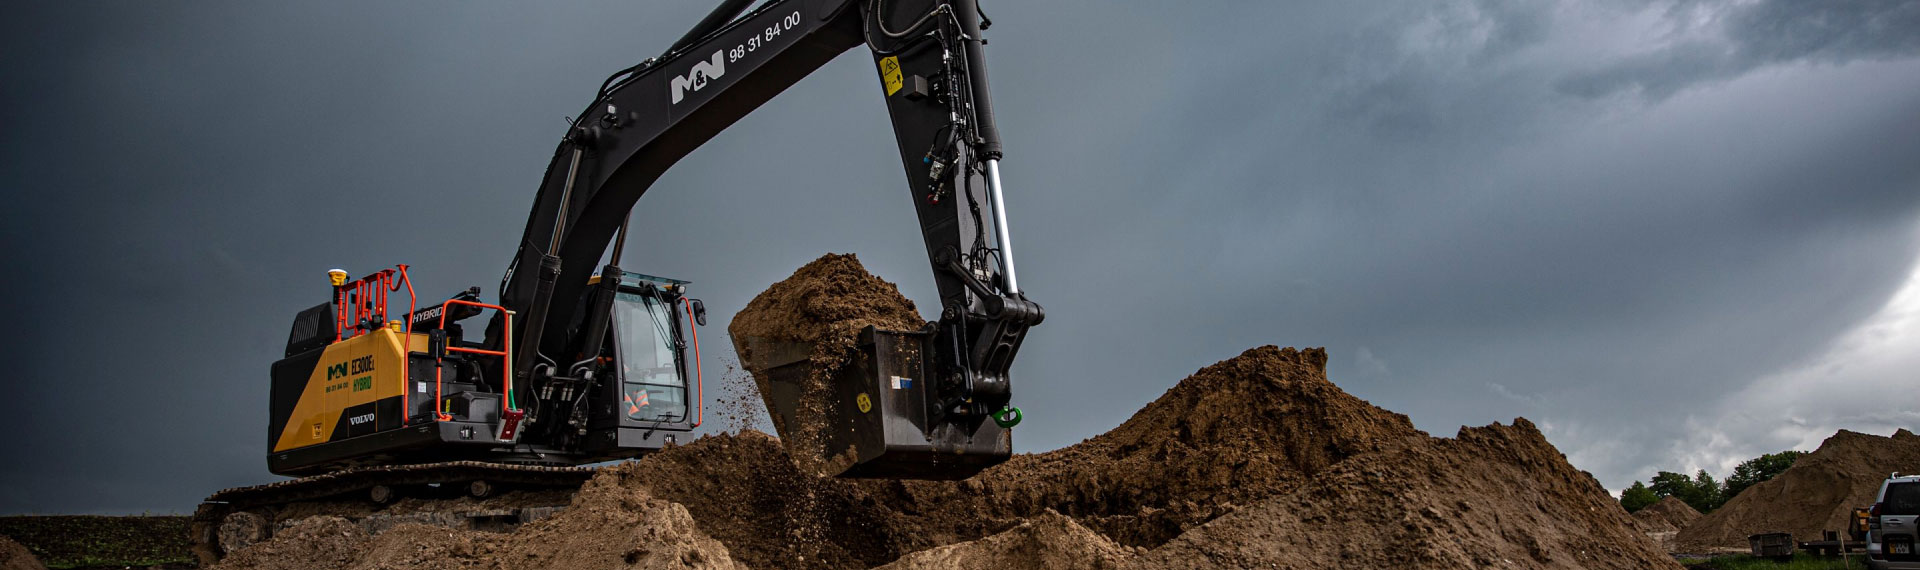 土を掘るHardox® 500 Tuf鋼製の丈夫で軽量な掘削機バケット。